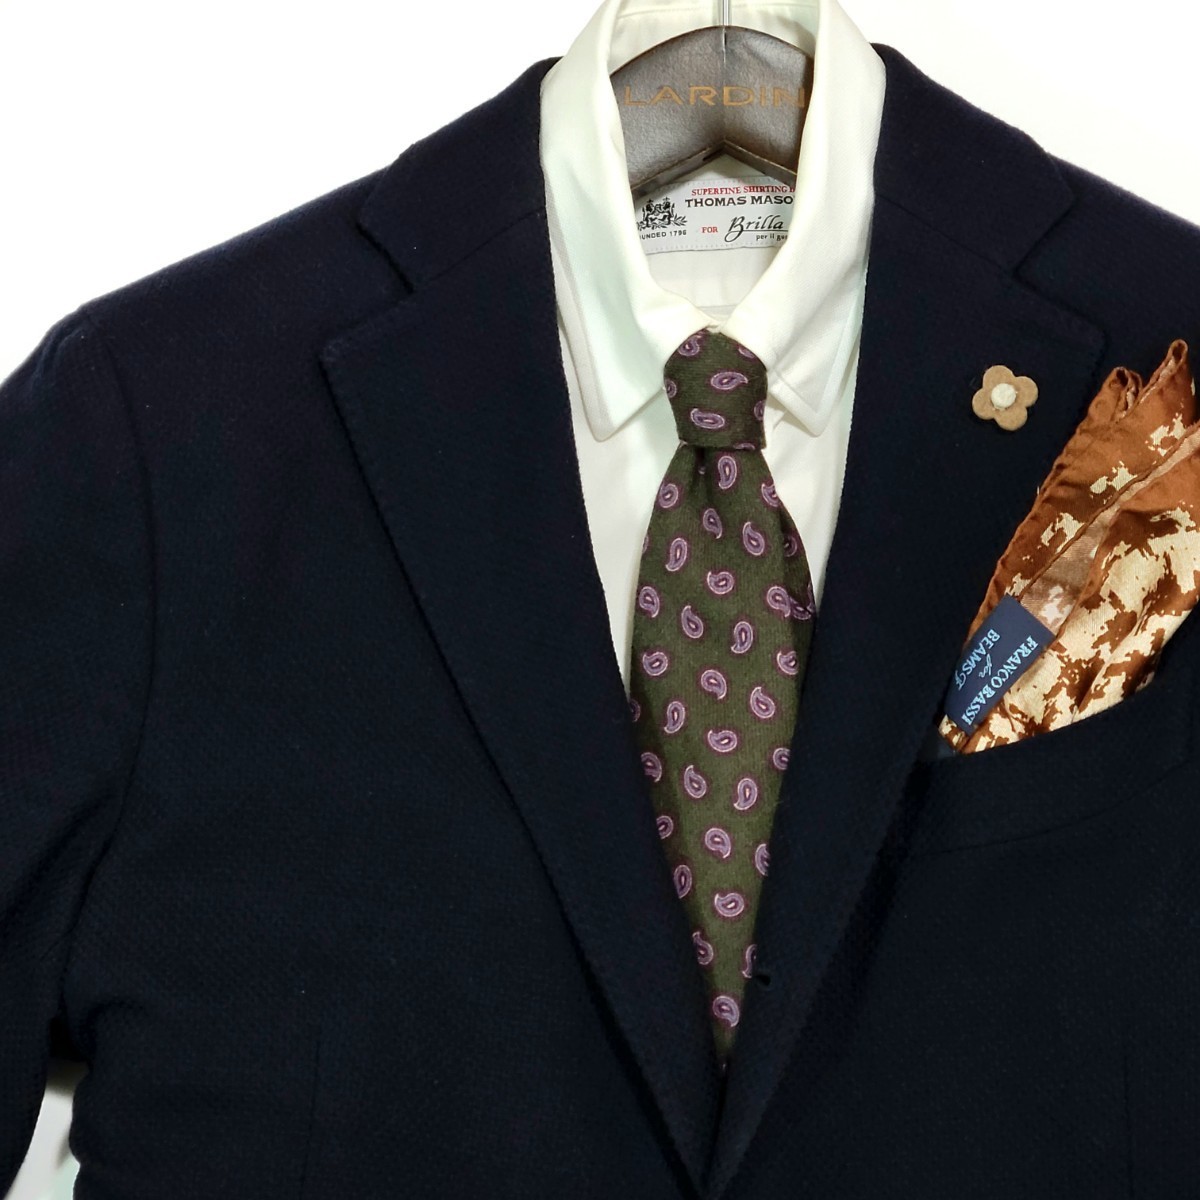 [ превосходный товар ] примерно 2 десять тысяч иен ni ключ супер высококлассный кашемир 100% осень-зима nicky UNITED ARROWS специальный заказ сотрудничество галстук костюм tailored jacket Y рубашка .0